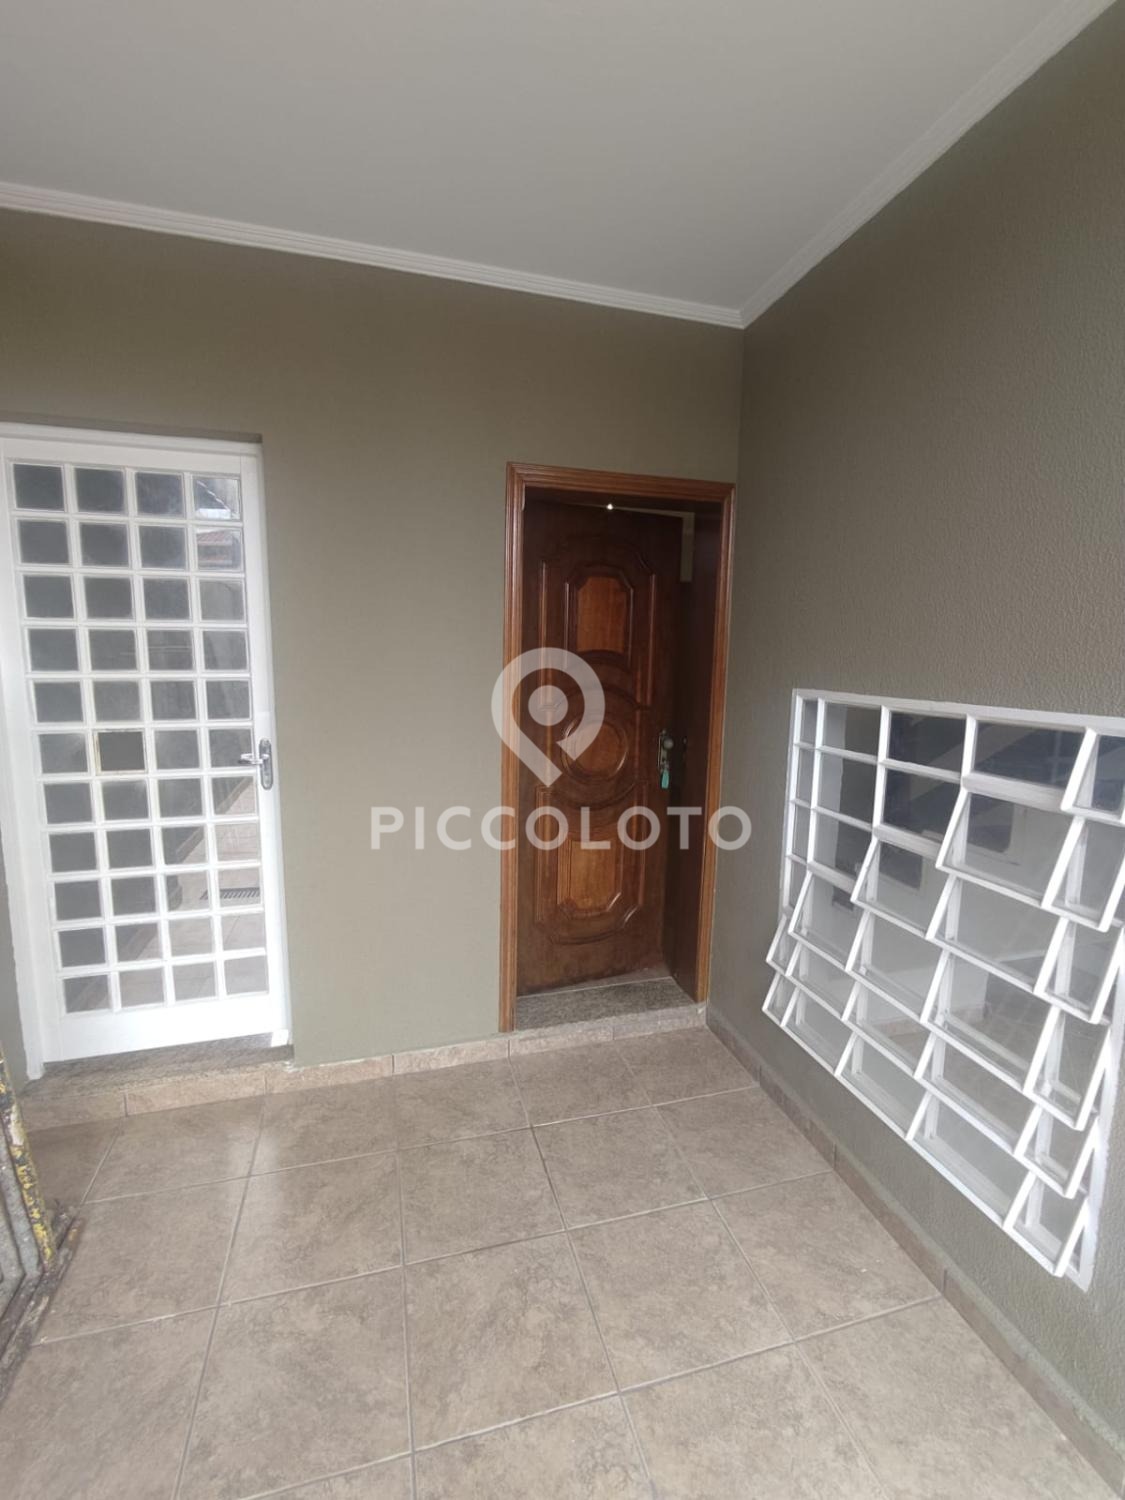 Piccoloto -Casa à venda no Parque Jambeiro em Campinas